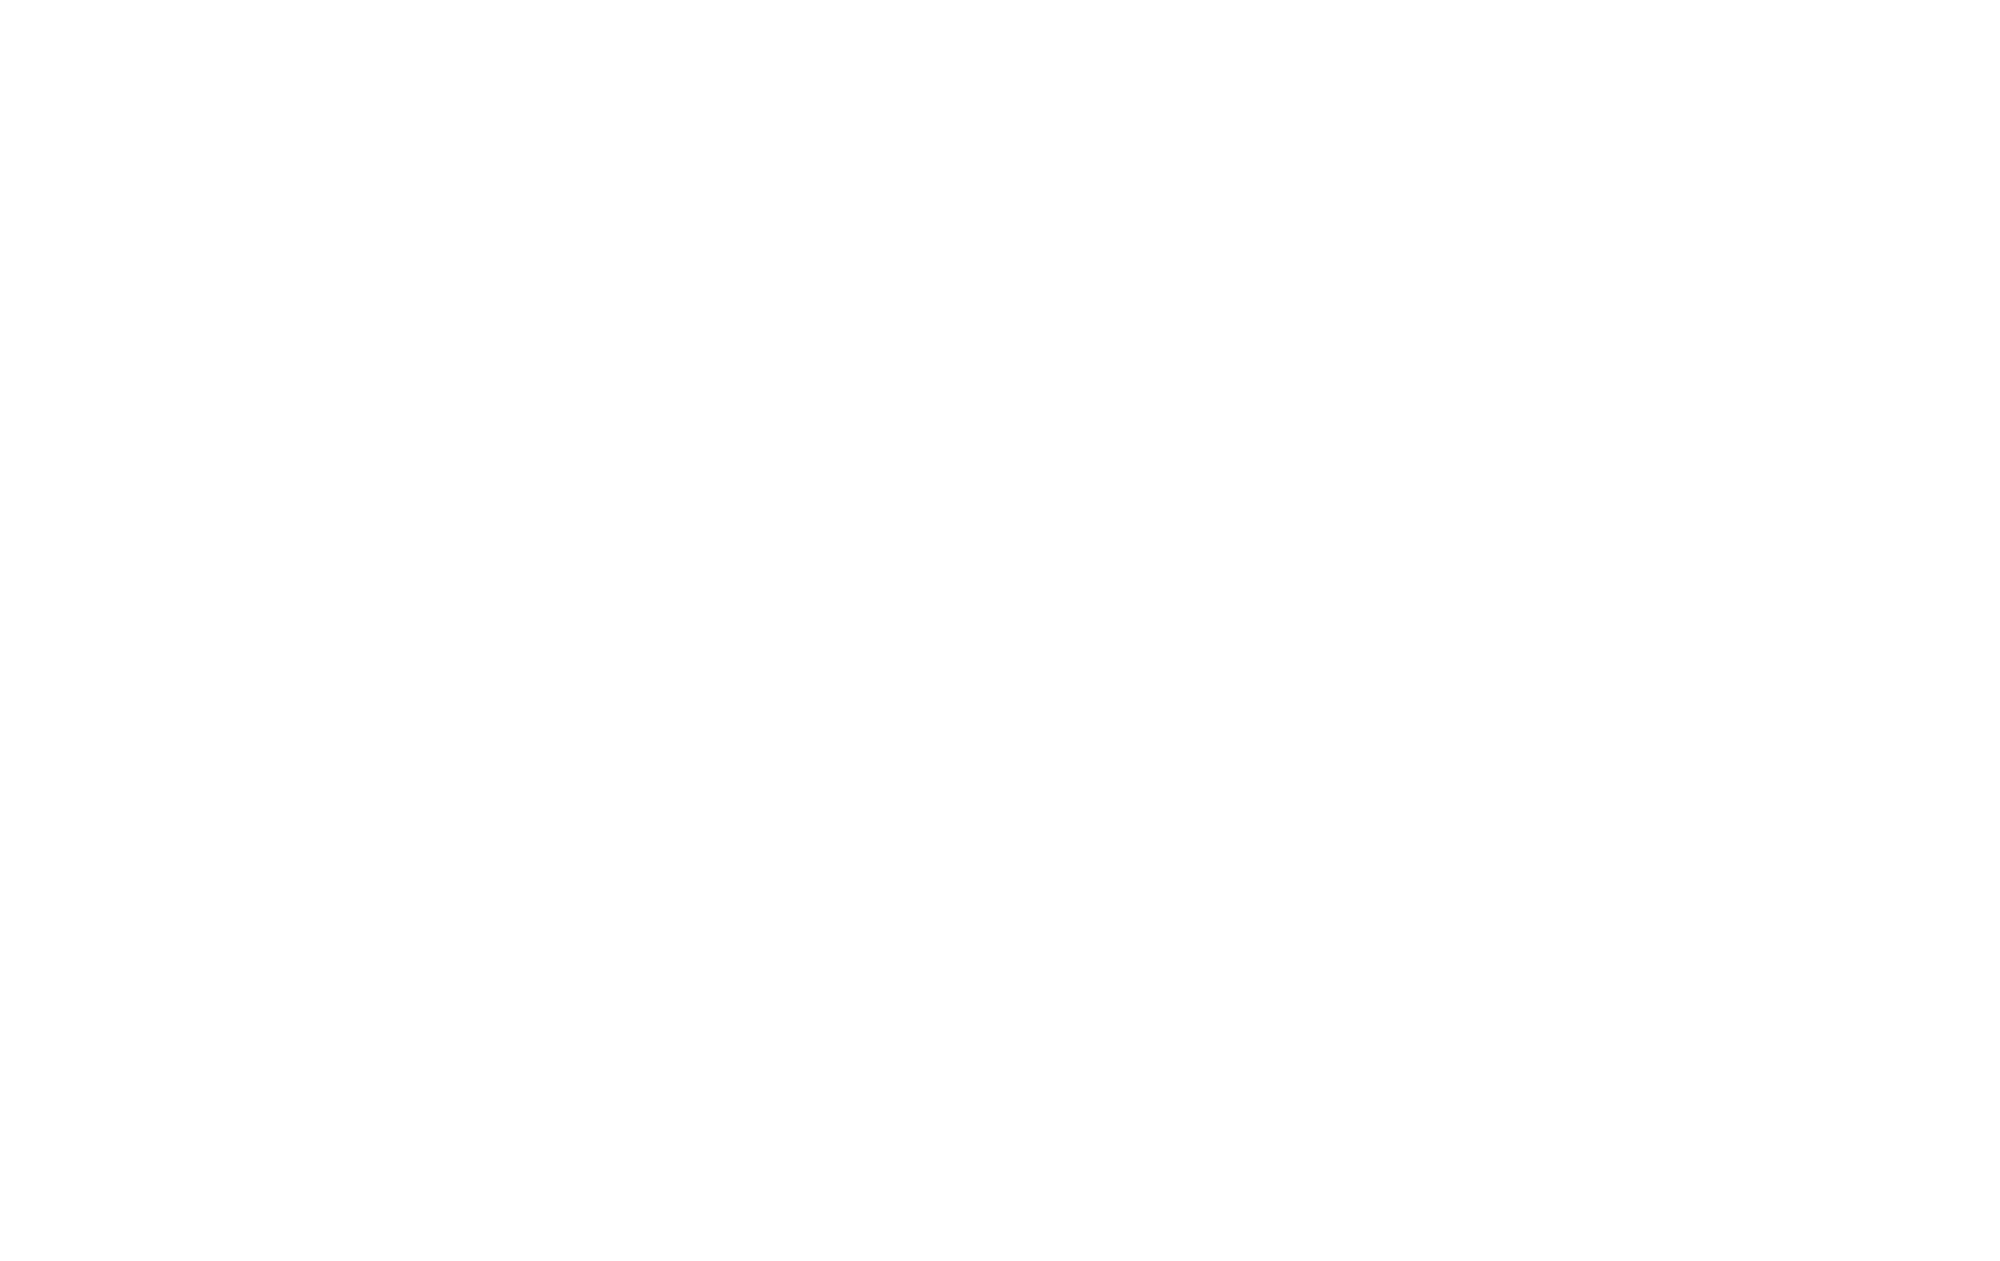 EnjoyPGLIFE